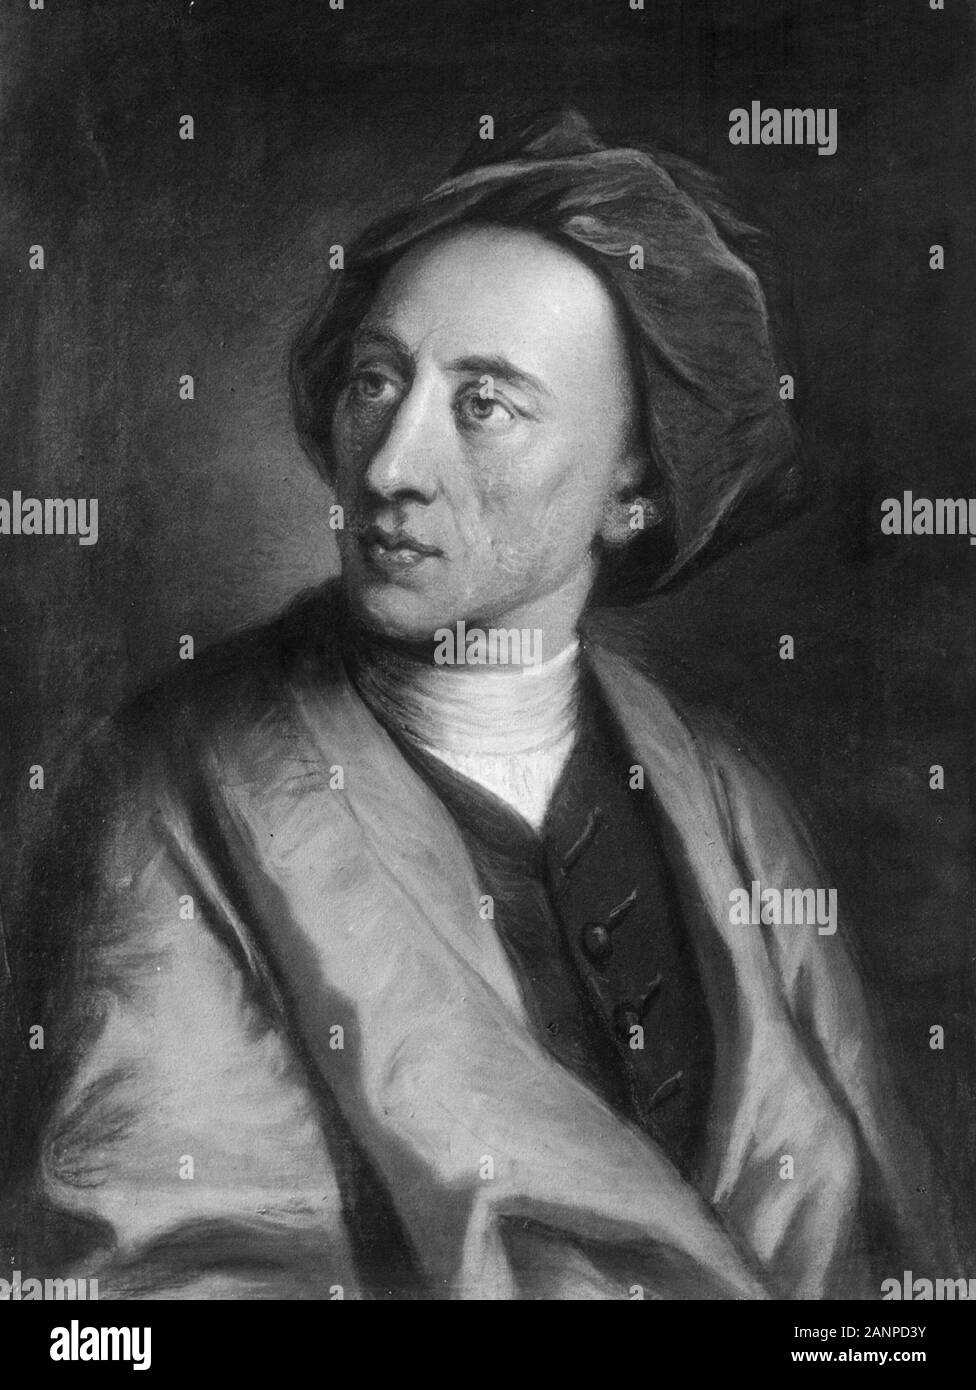 Alexander Pope (1688 - 1744) poète anglais, Alexander Pope (21 mai 1688 - 30 mai 1744) L'un des plus grands poètes anglais, et le plus grand poète du début du dix-huitième siècle. Banque D'Images